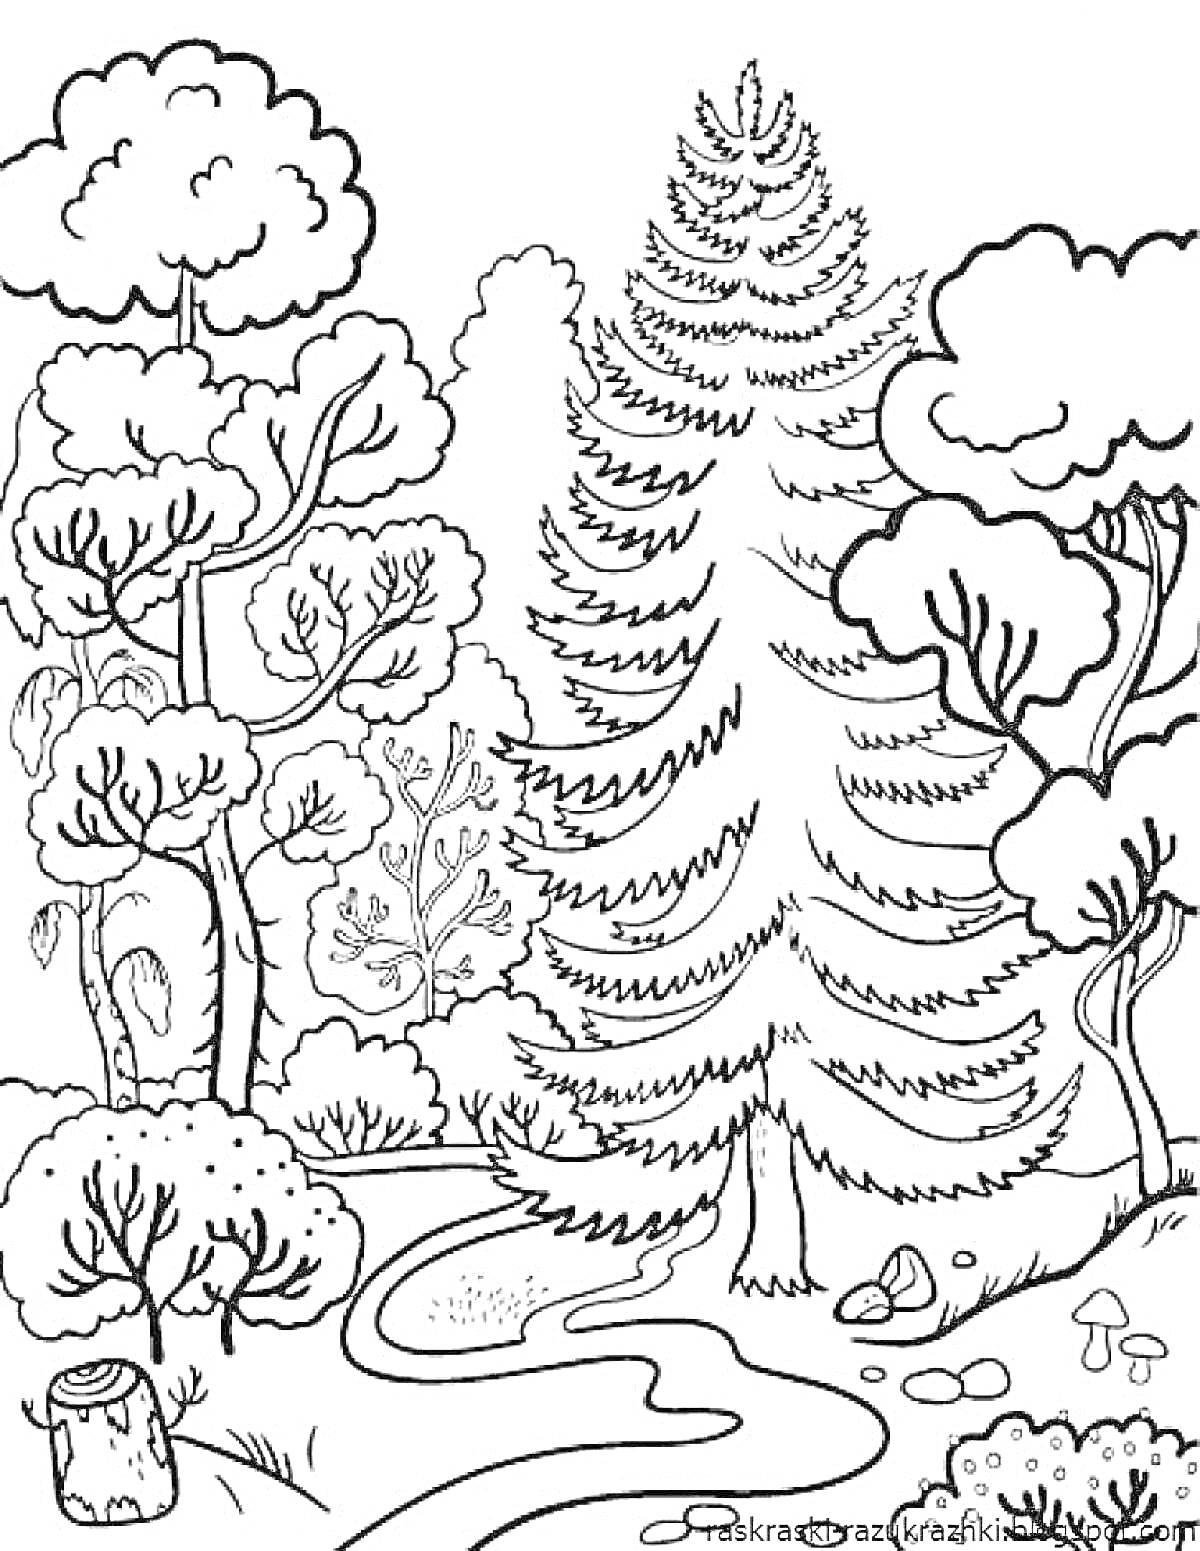 Раскраска Лес с высокими елями, кустарниками, полянкой, пеньком и грибами на земле